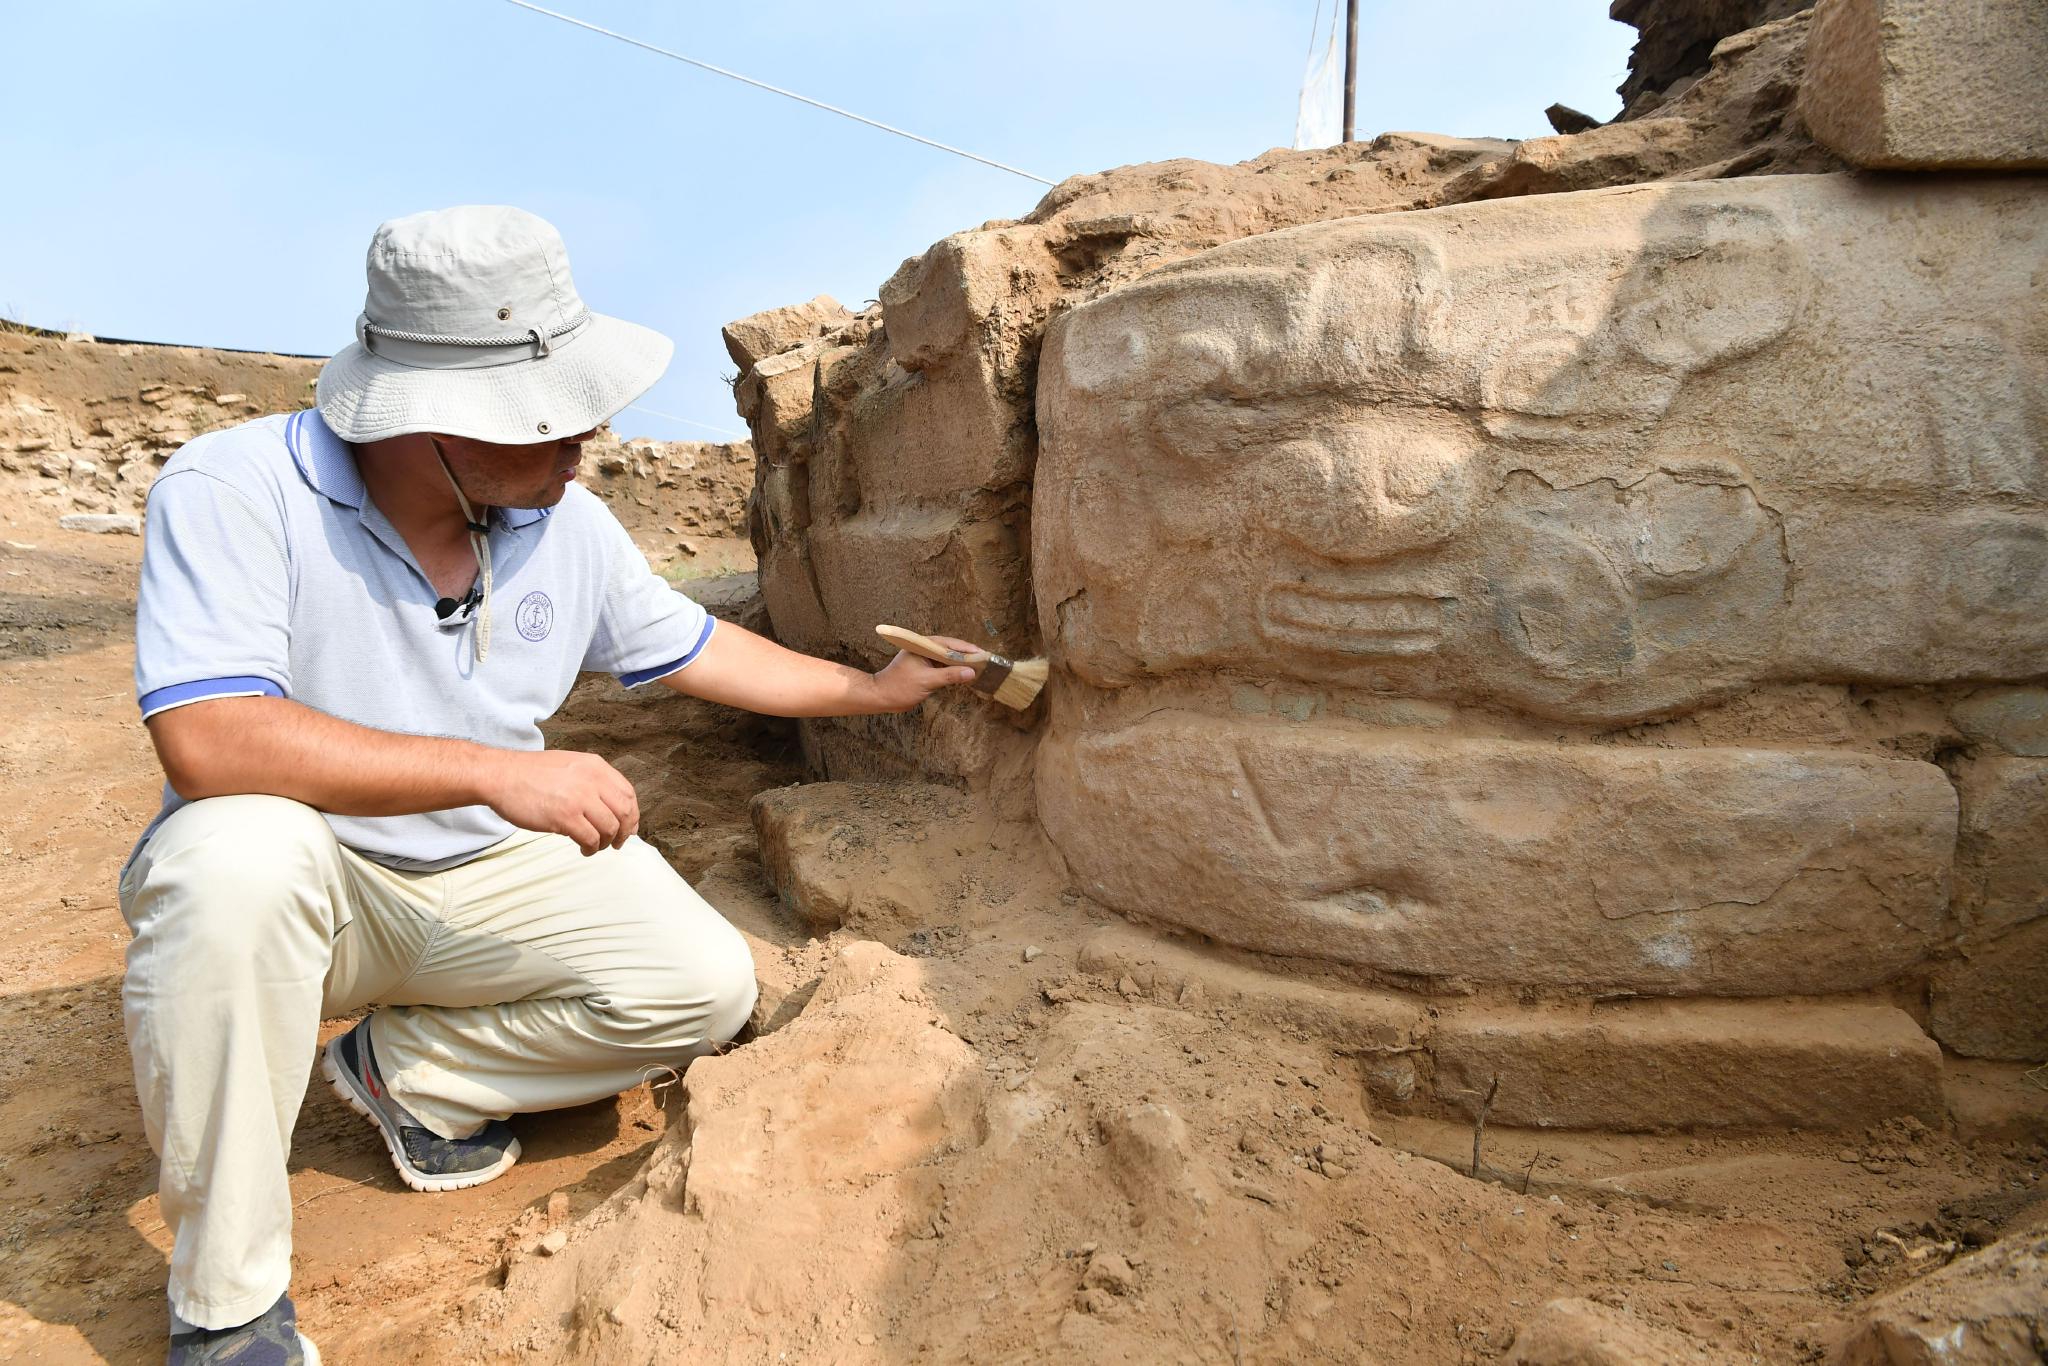 考古工作者正在对石雕进行发掘清理。新华社记者张博文摄